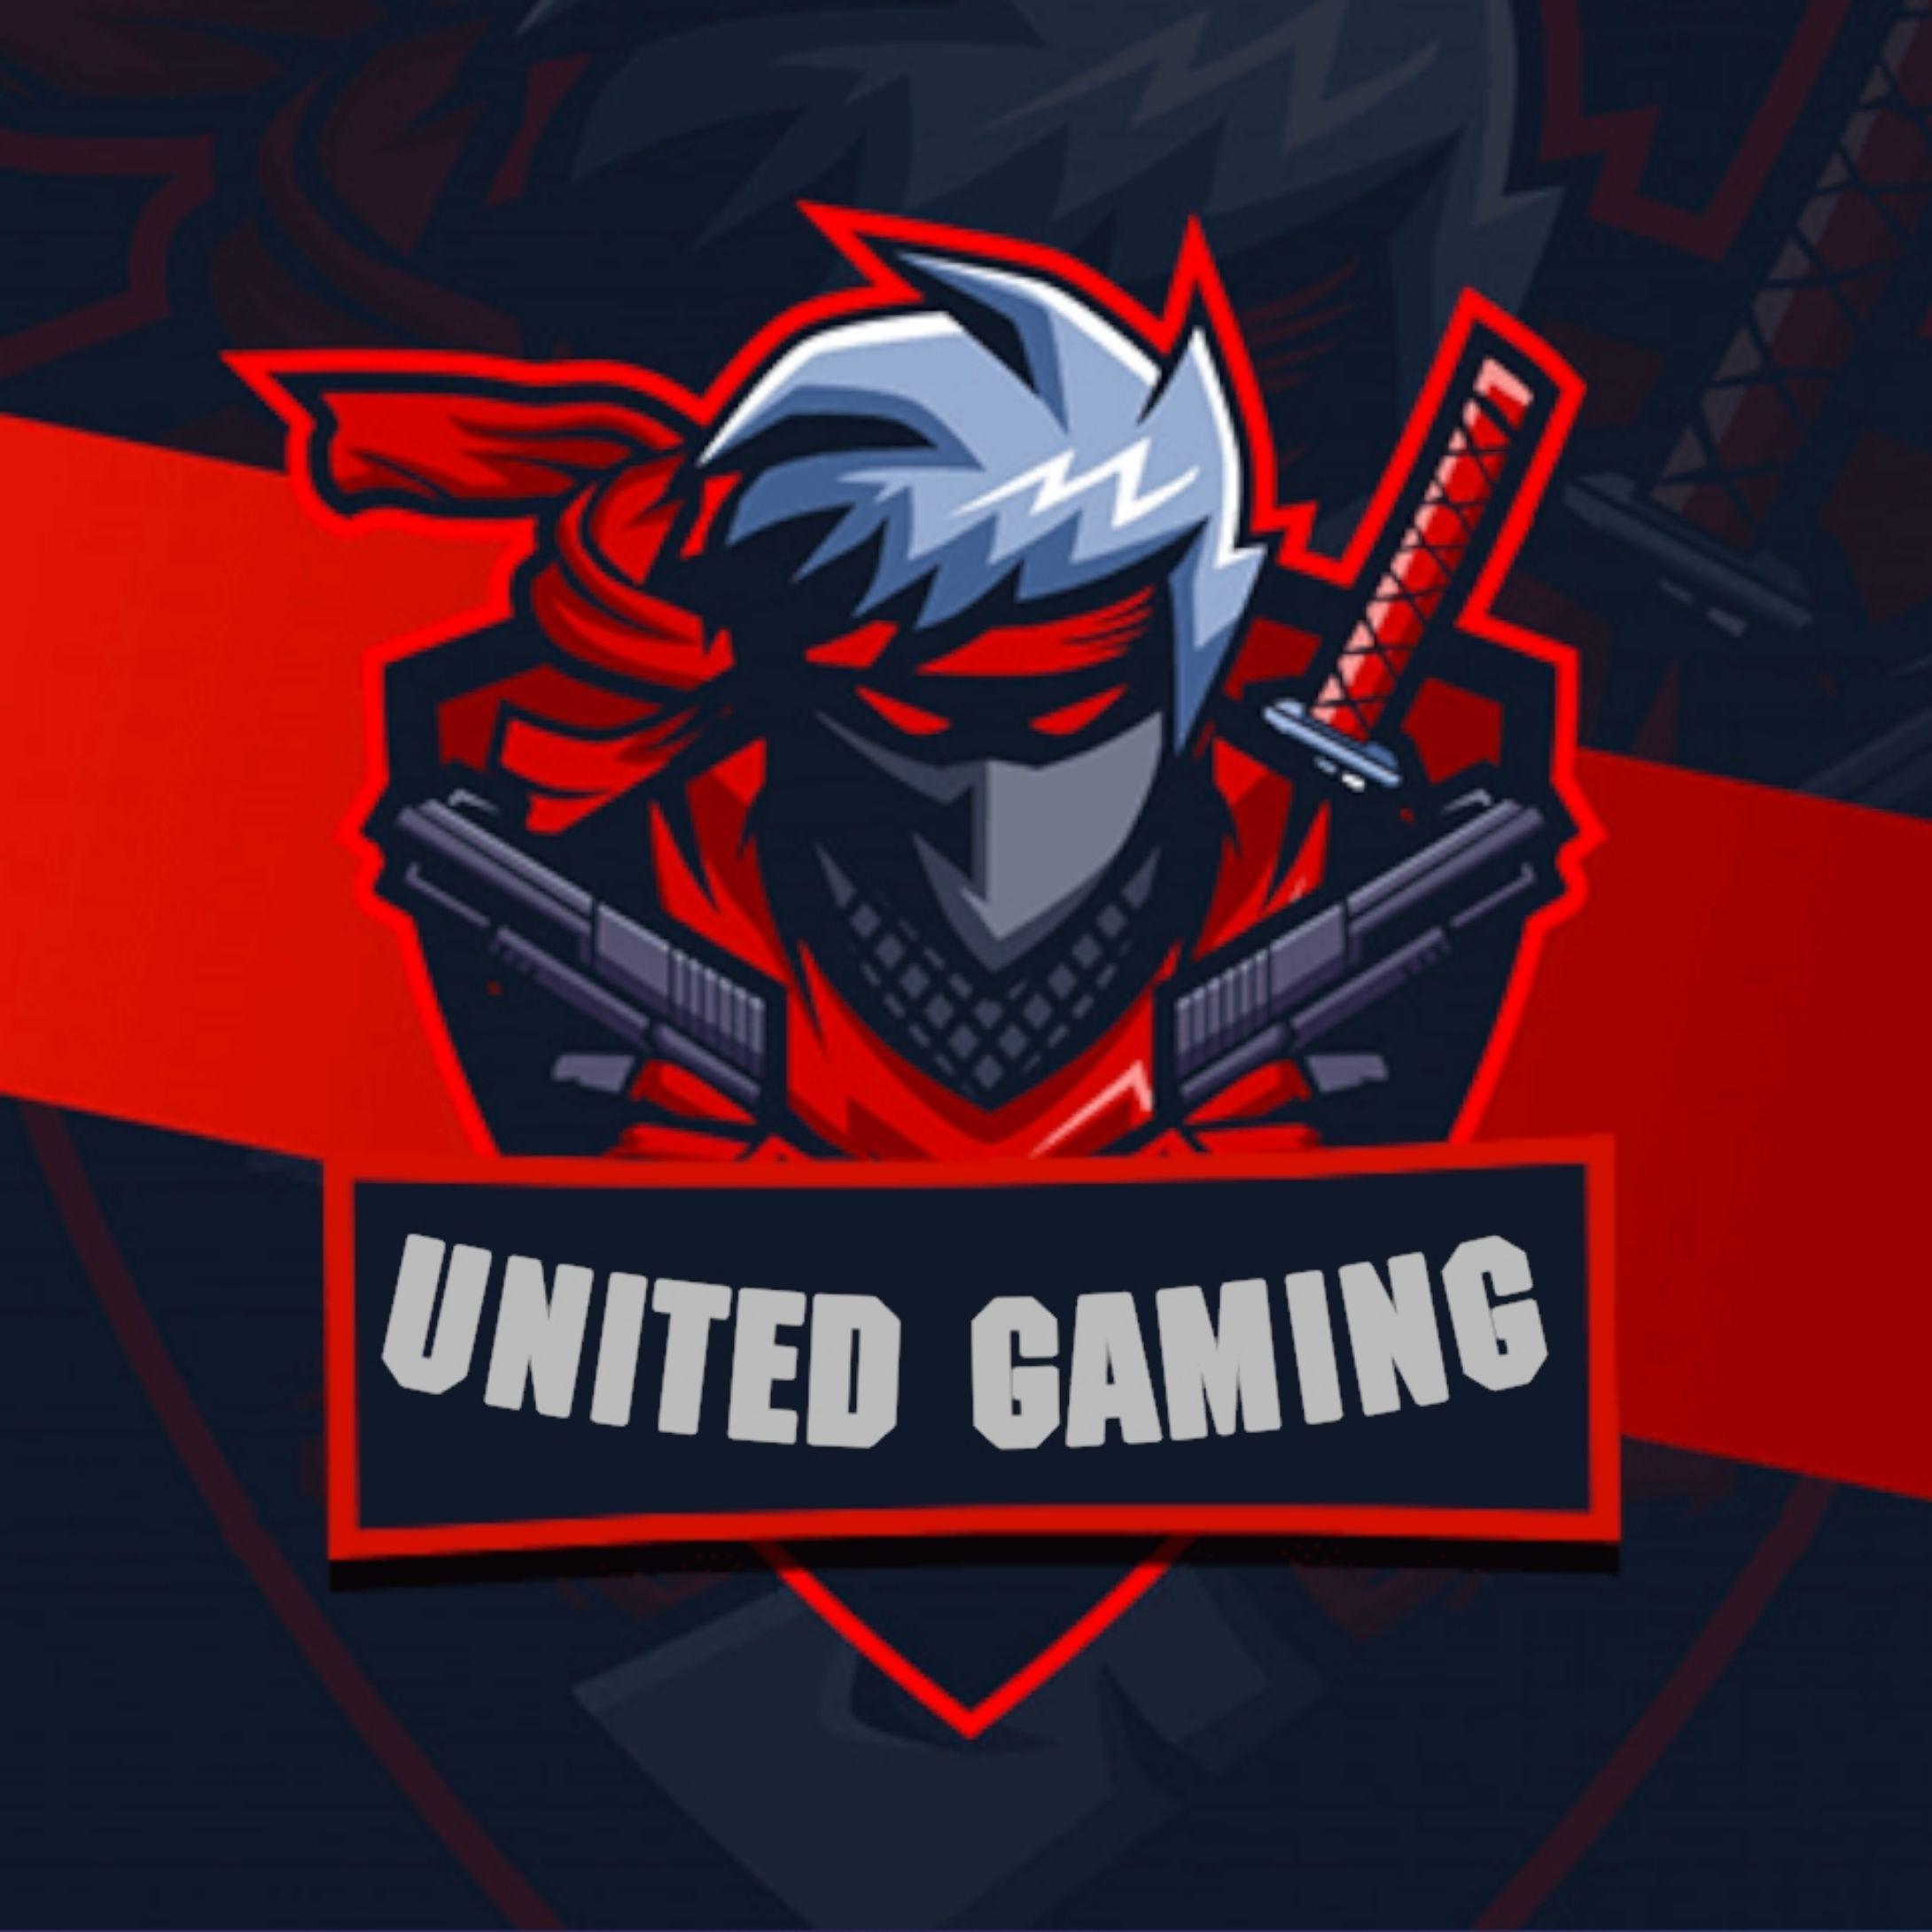 Giới thiệu về trò chơi đình đám United Gaming Suncity